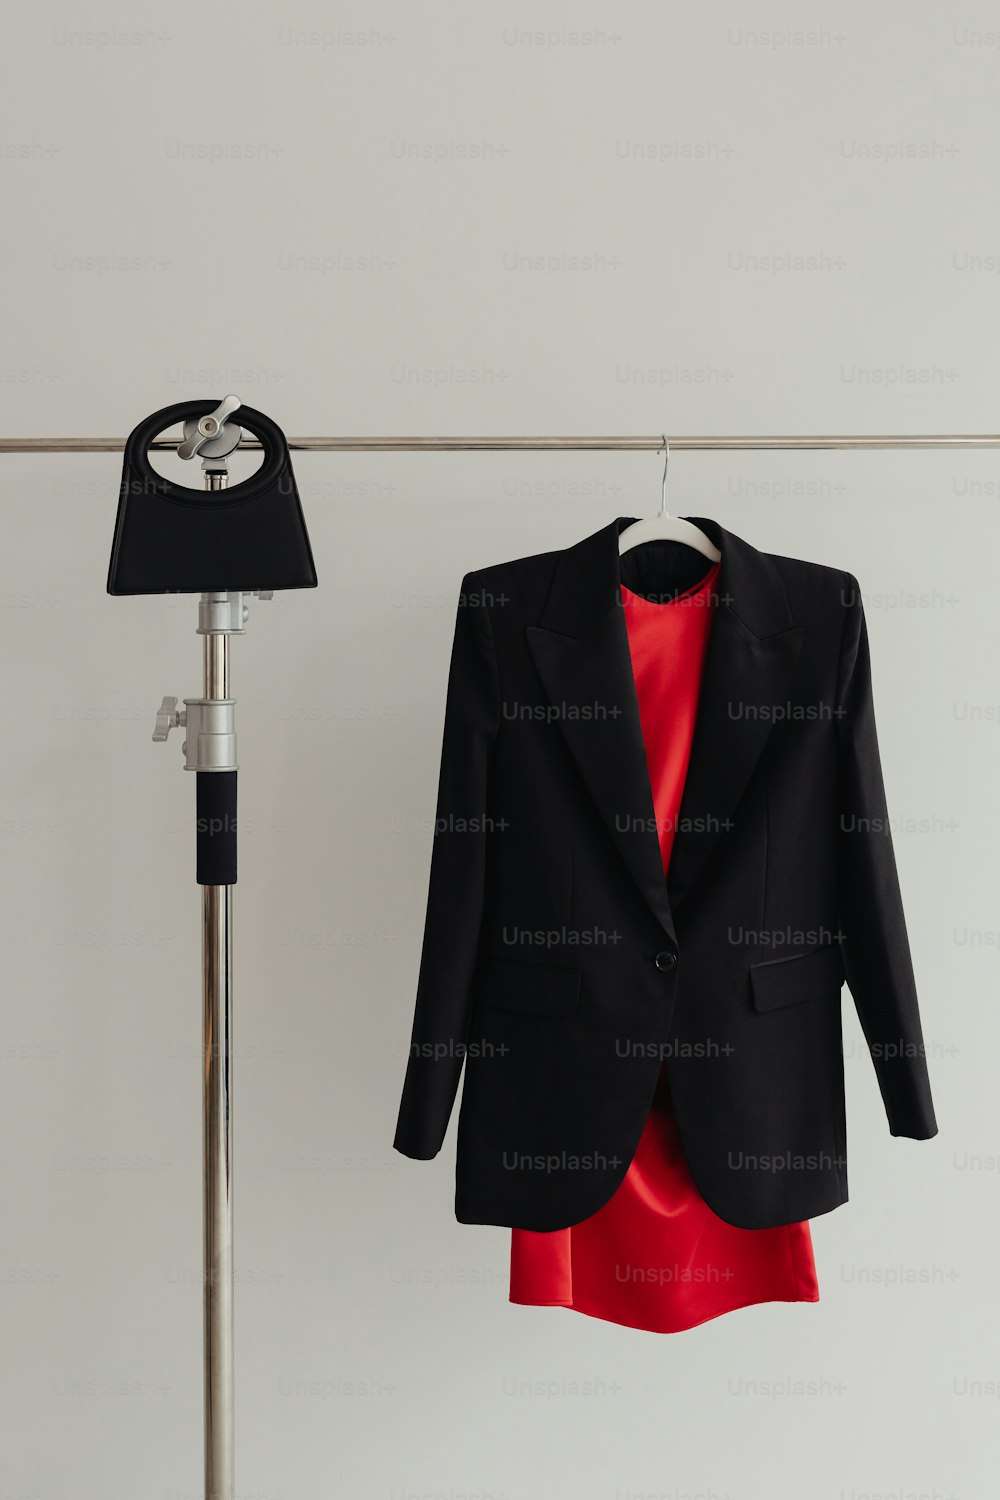 赤いドレスの隣の物干しにぶら下がっている黒いジャケット